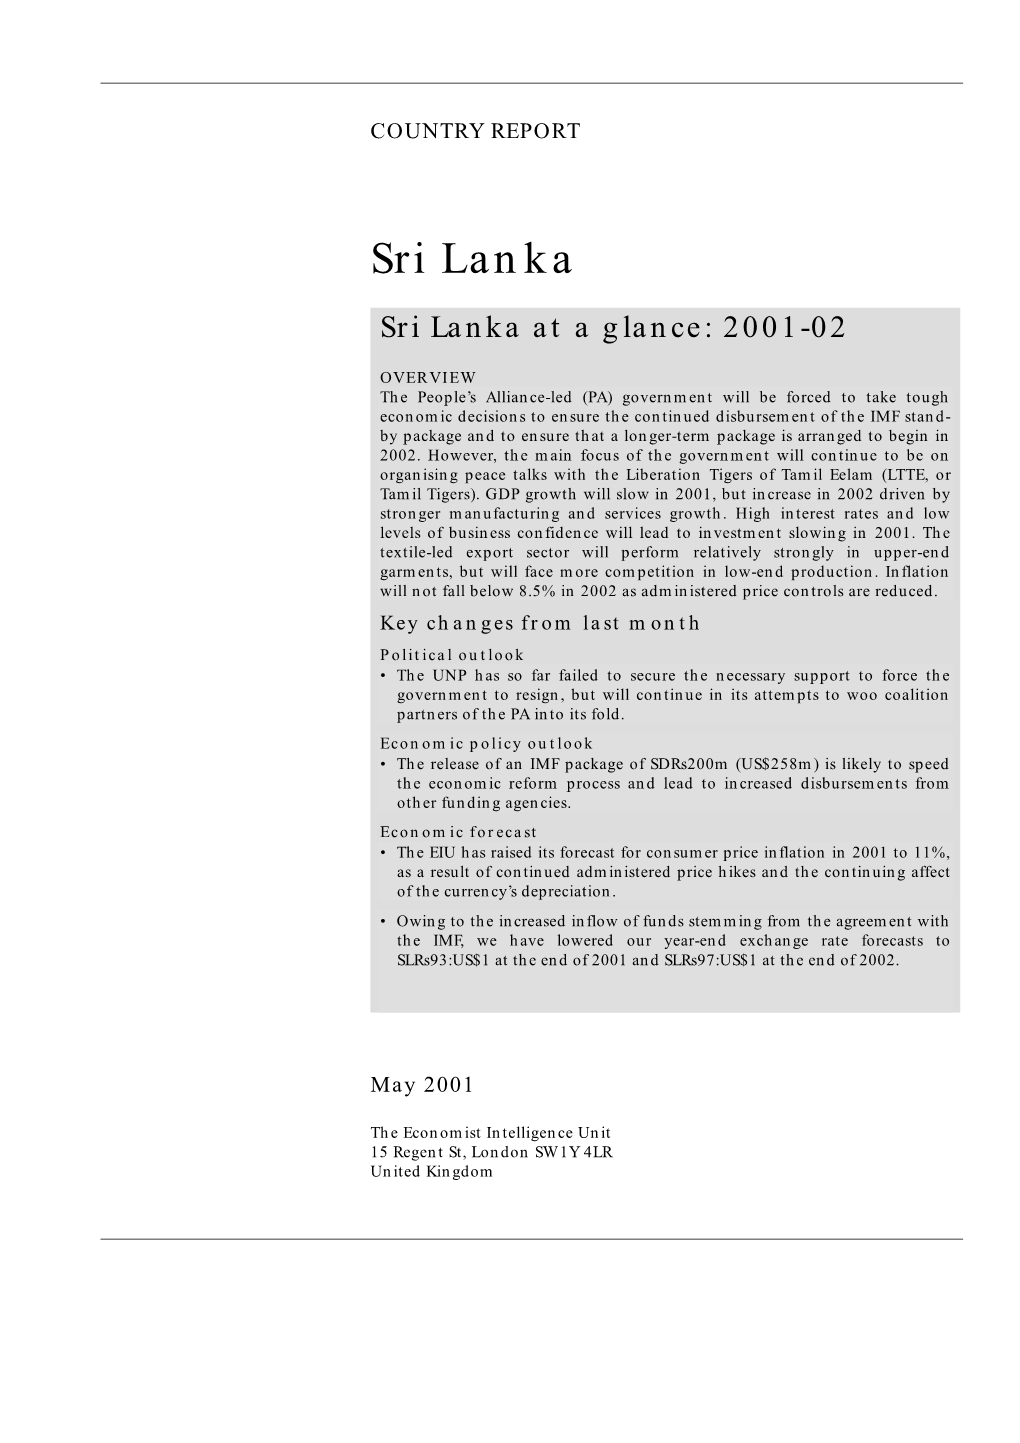 Sri Lanka Sri Lanka at a Glance: 2001-02